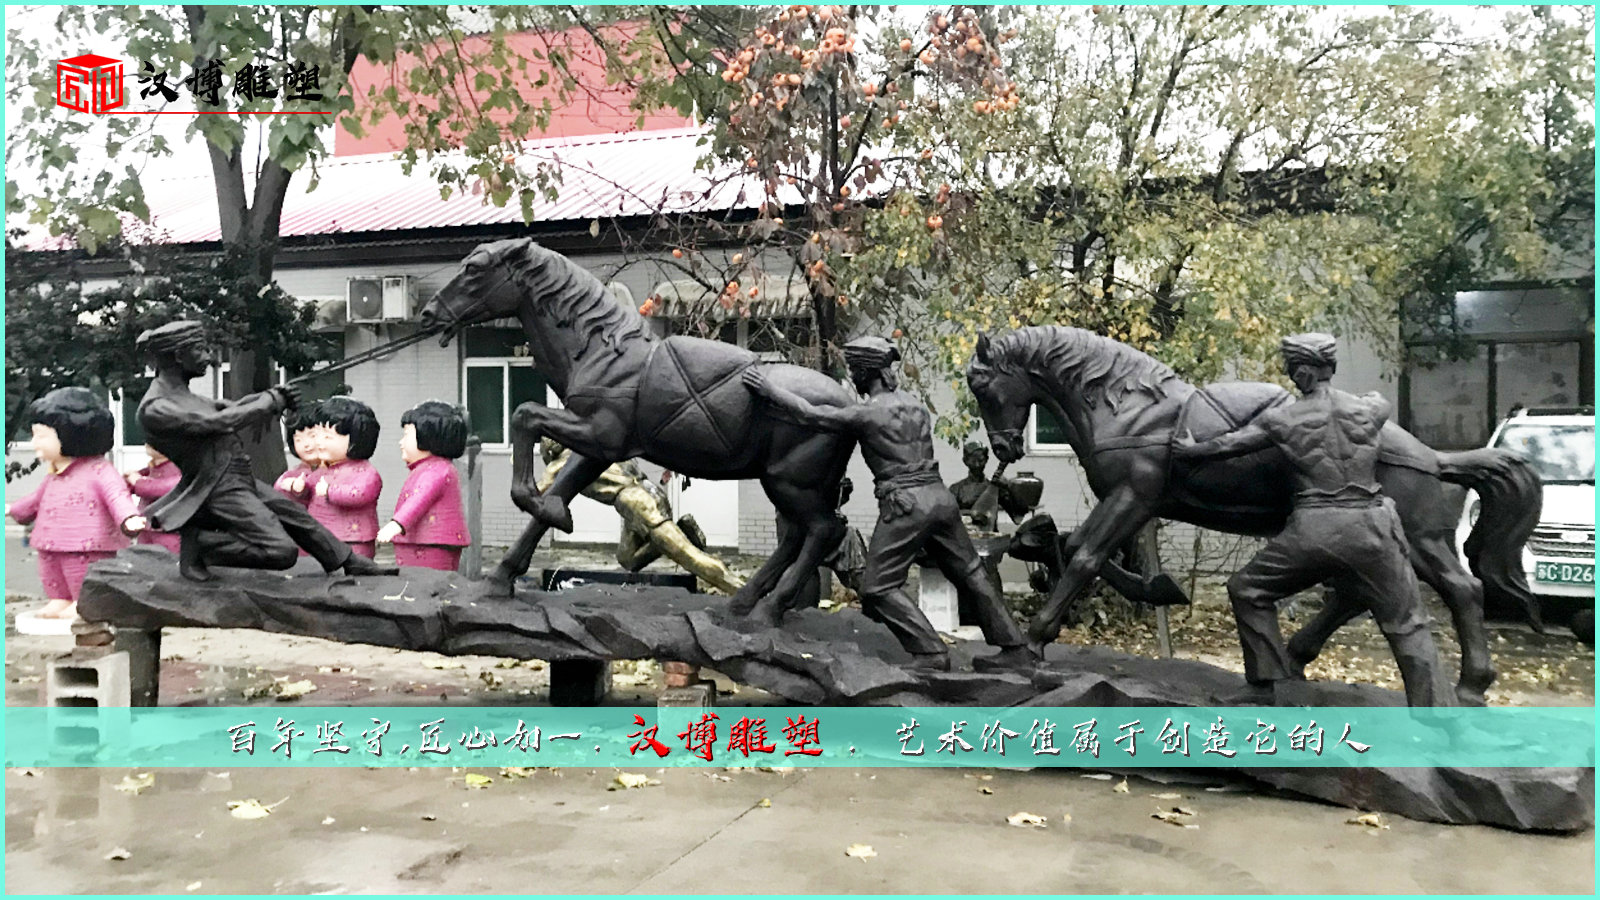 马帮雕塑,茶马古道主题铜雕,园林景观雕塑